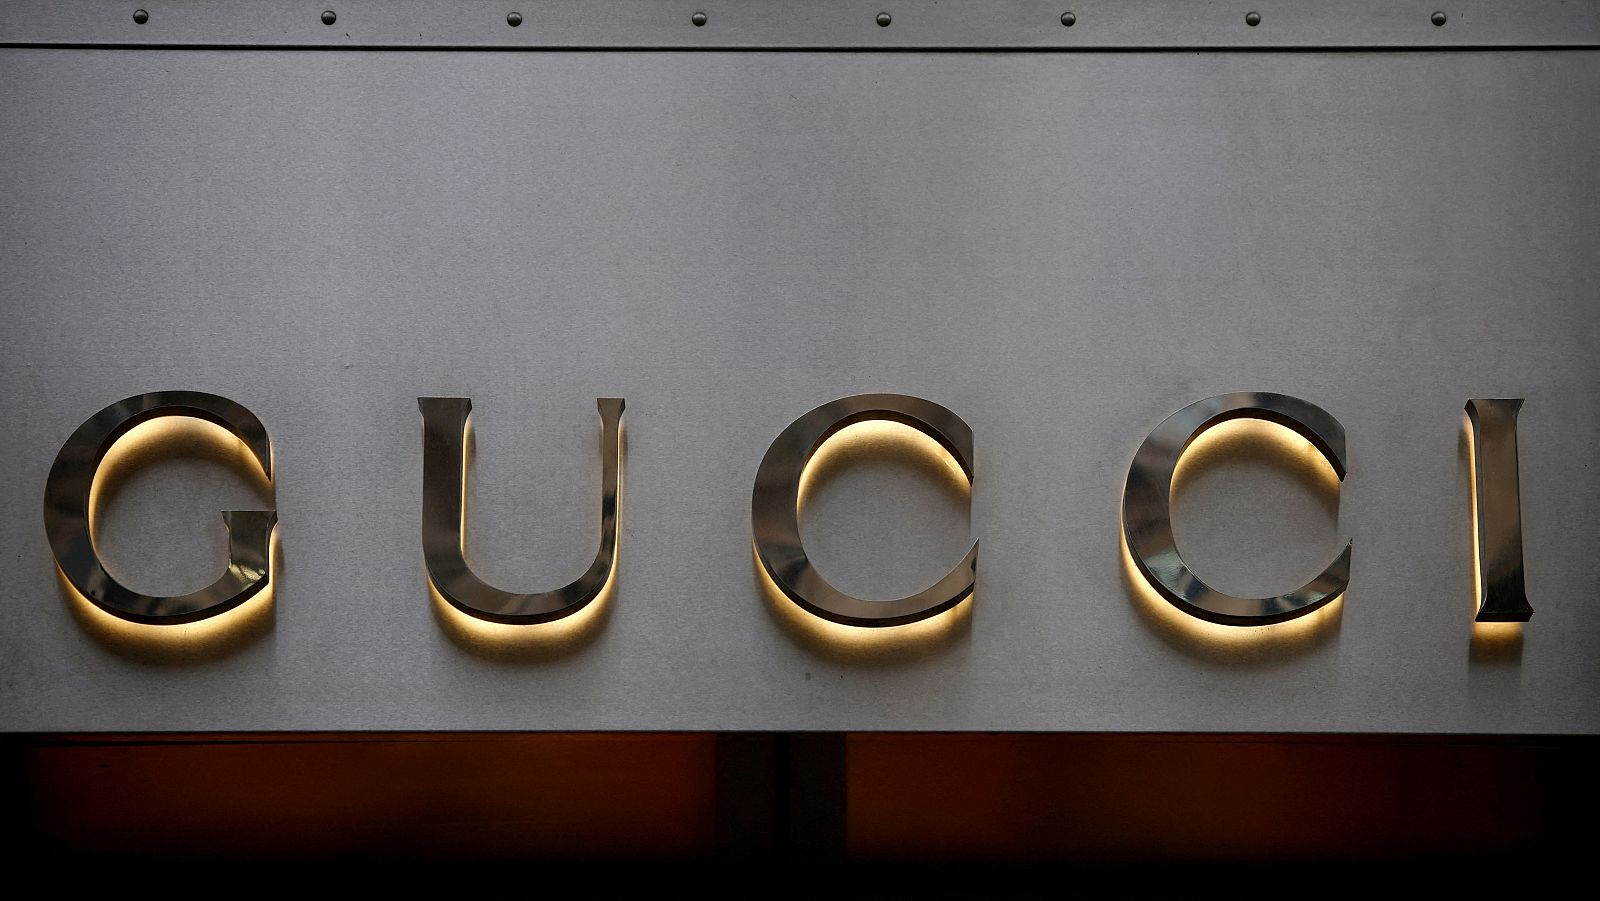 Gucci, investigada por la Comisión Europea en el marco de una operación antimonopolio